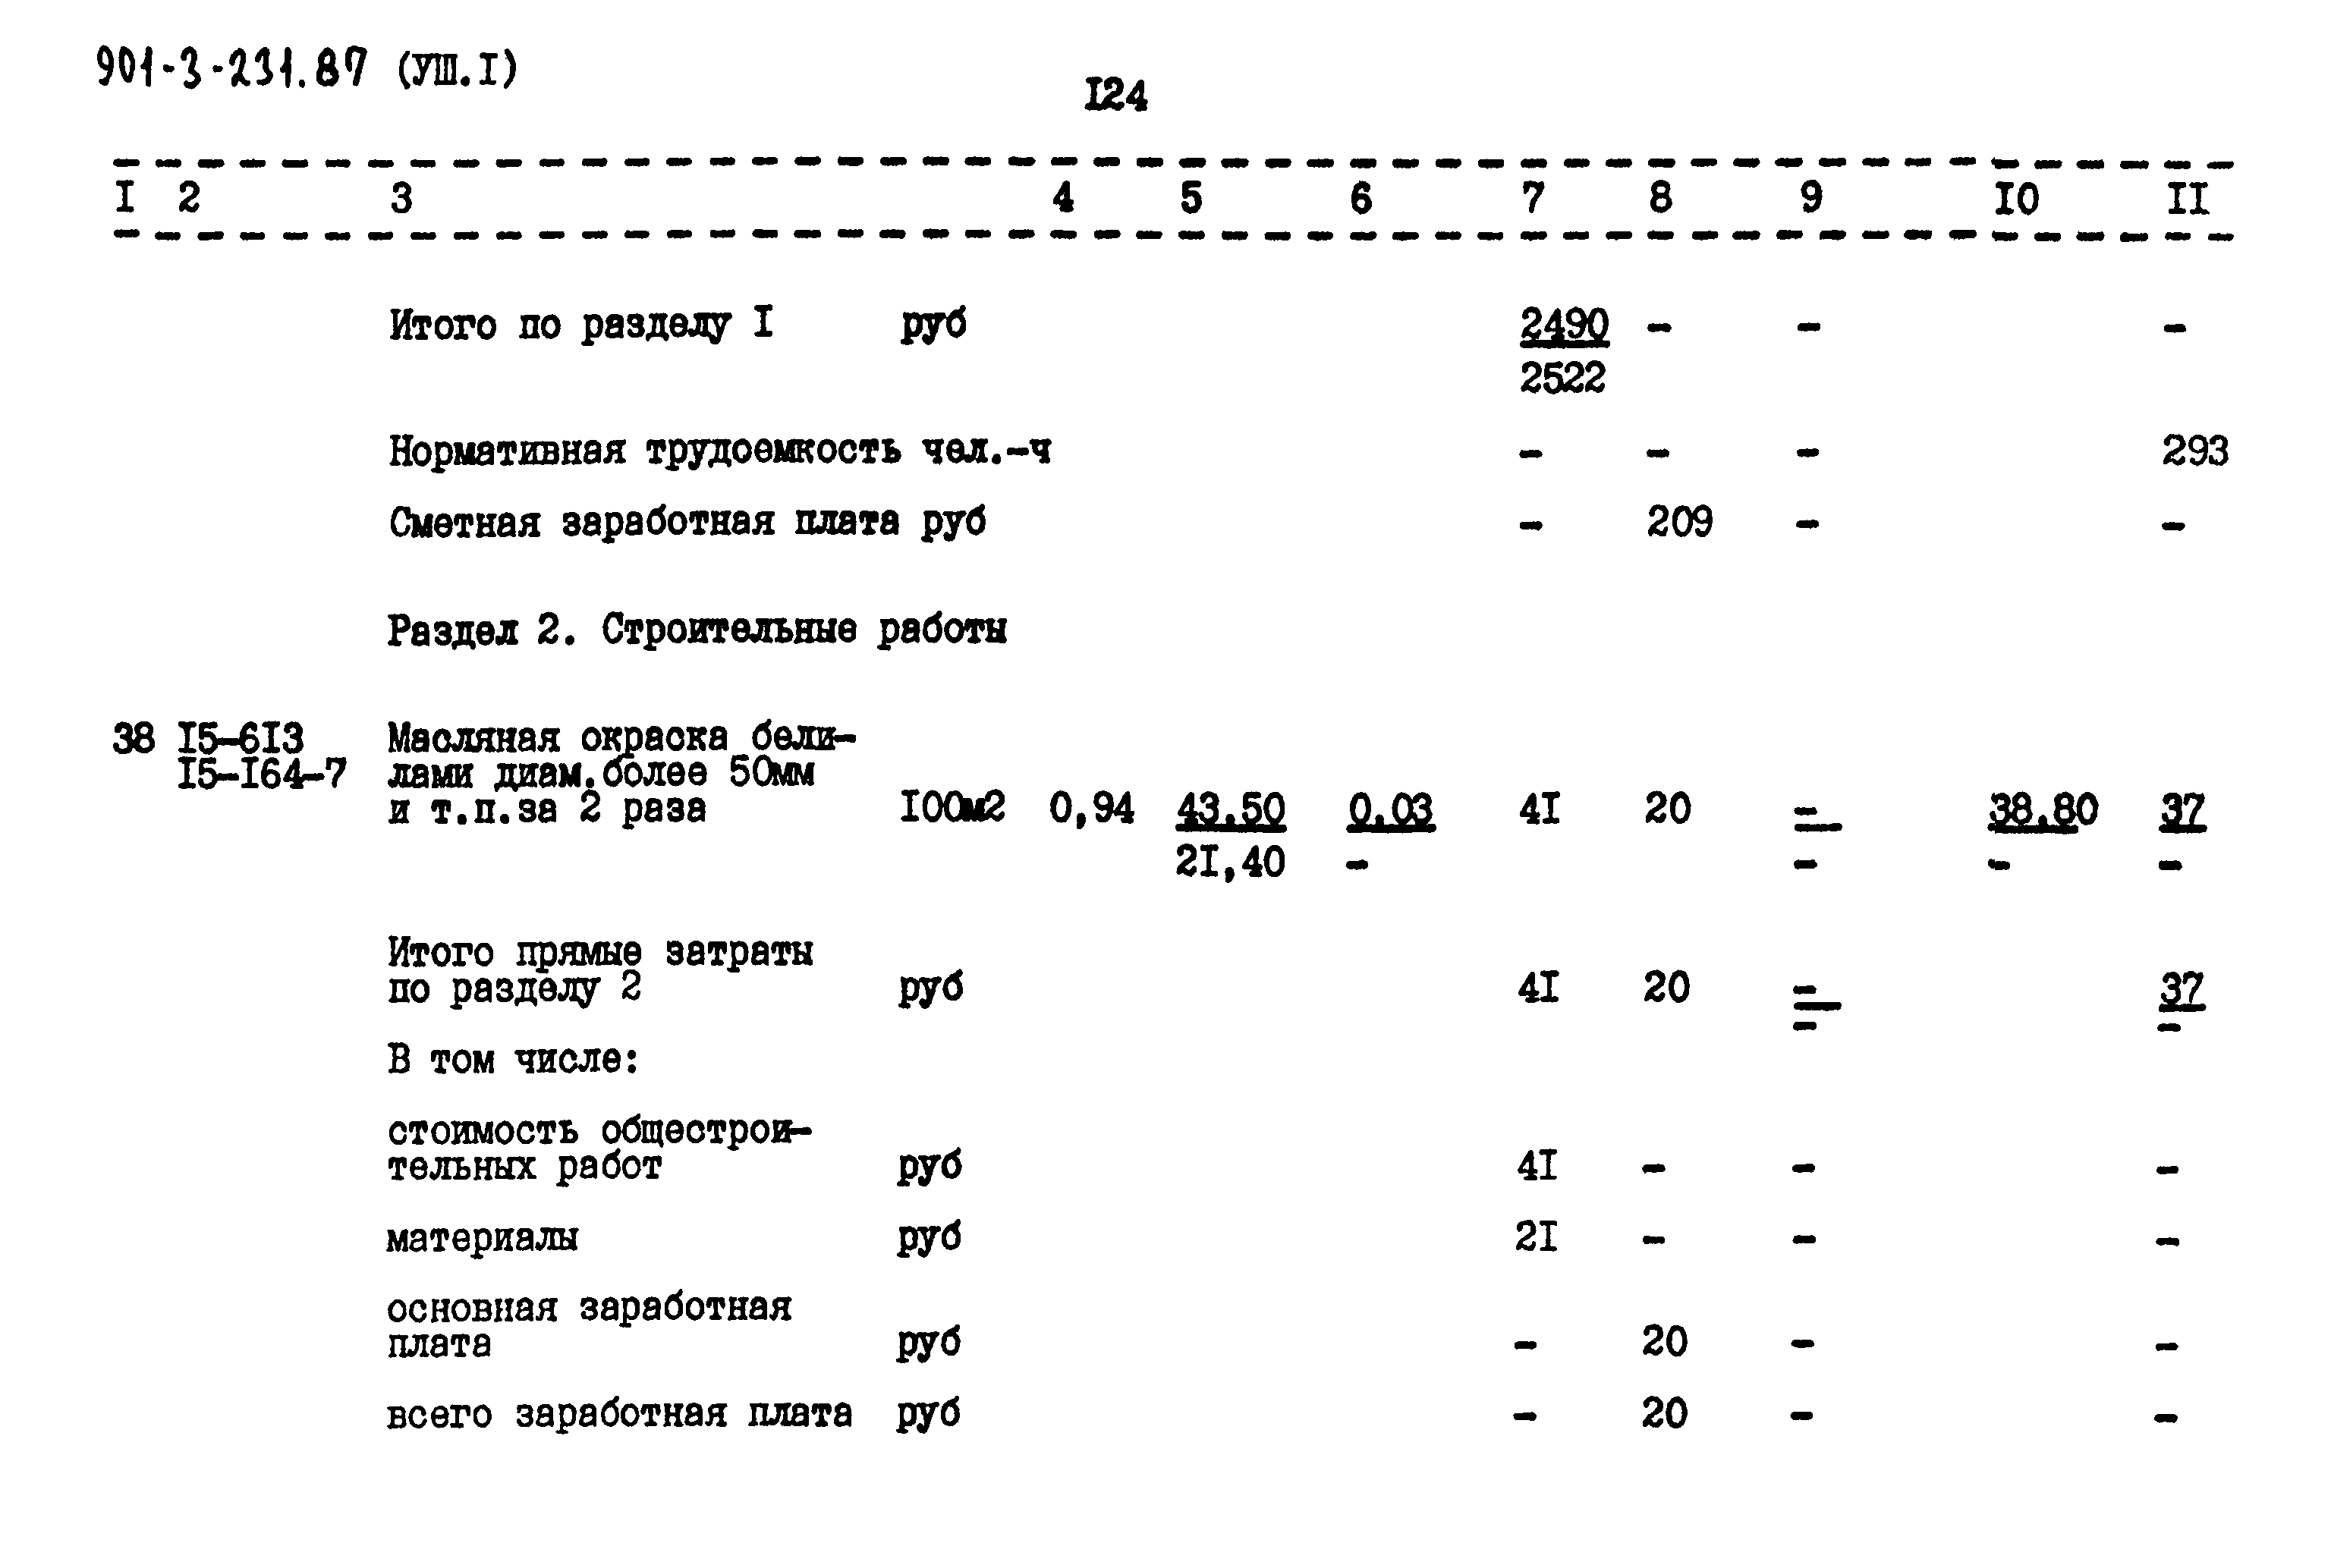 Типовой проект 901-3-232.87